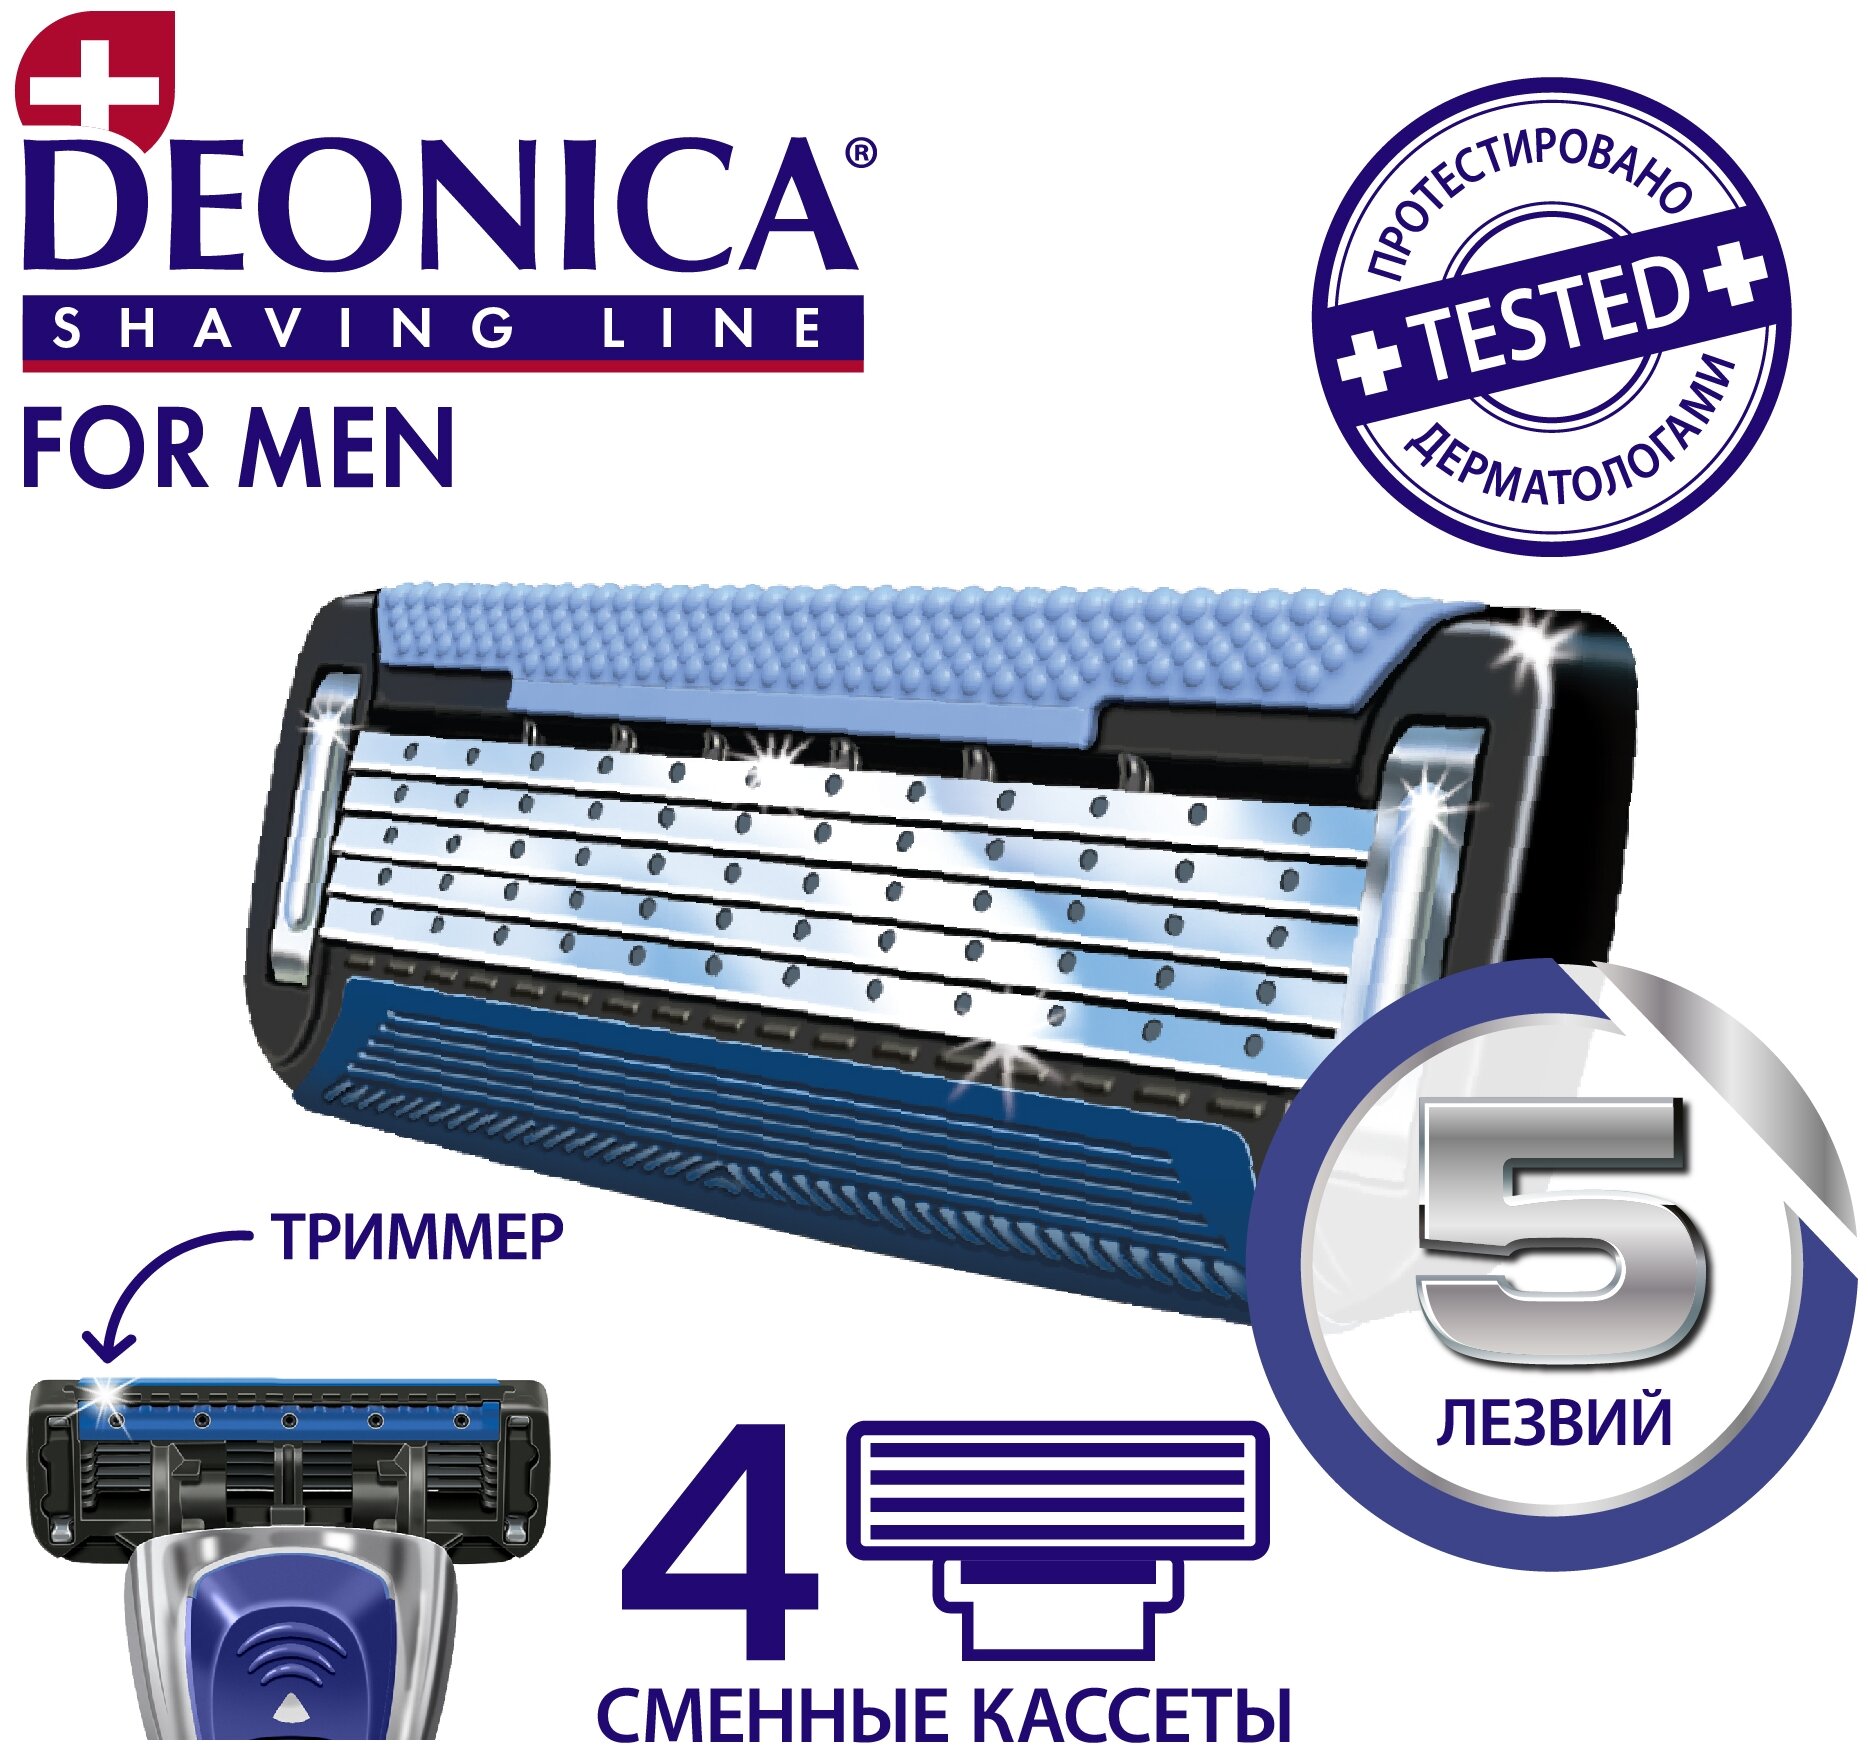 Сменные кассеты для бритв для мужчин Deonica с керамическим покрытием пять лезвий производства США 4 штуки